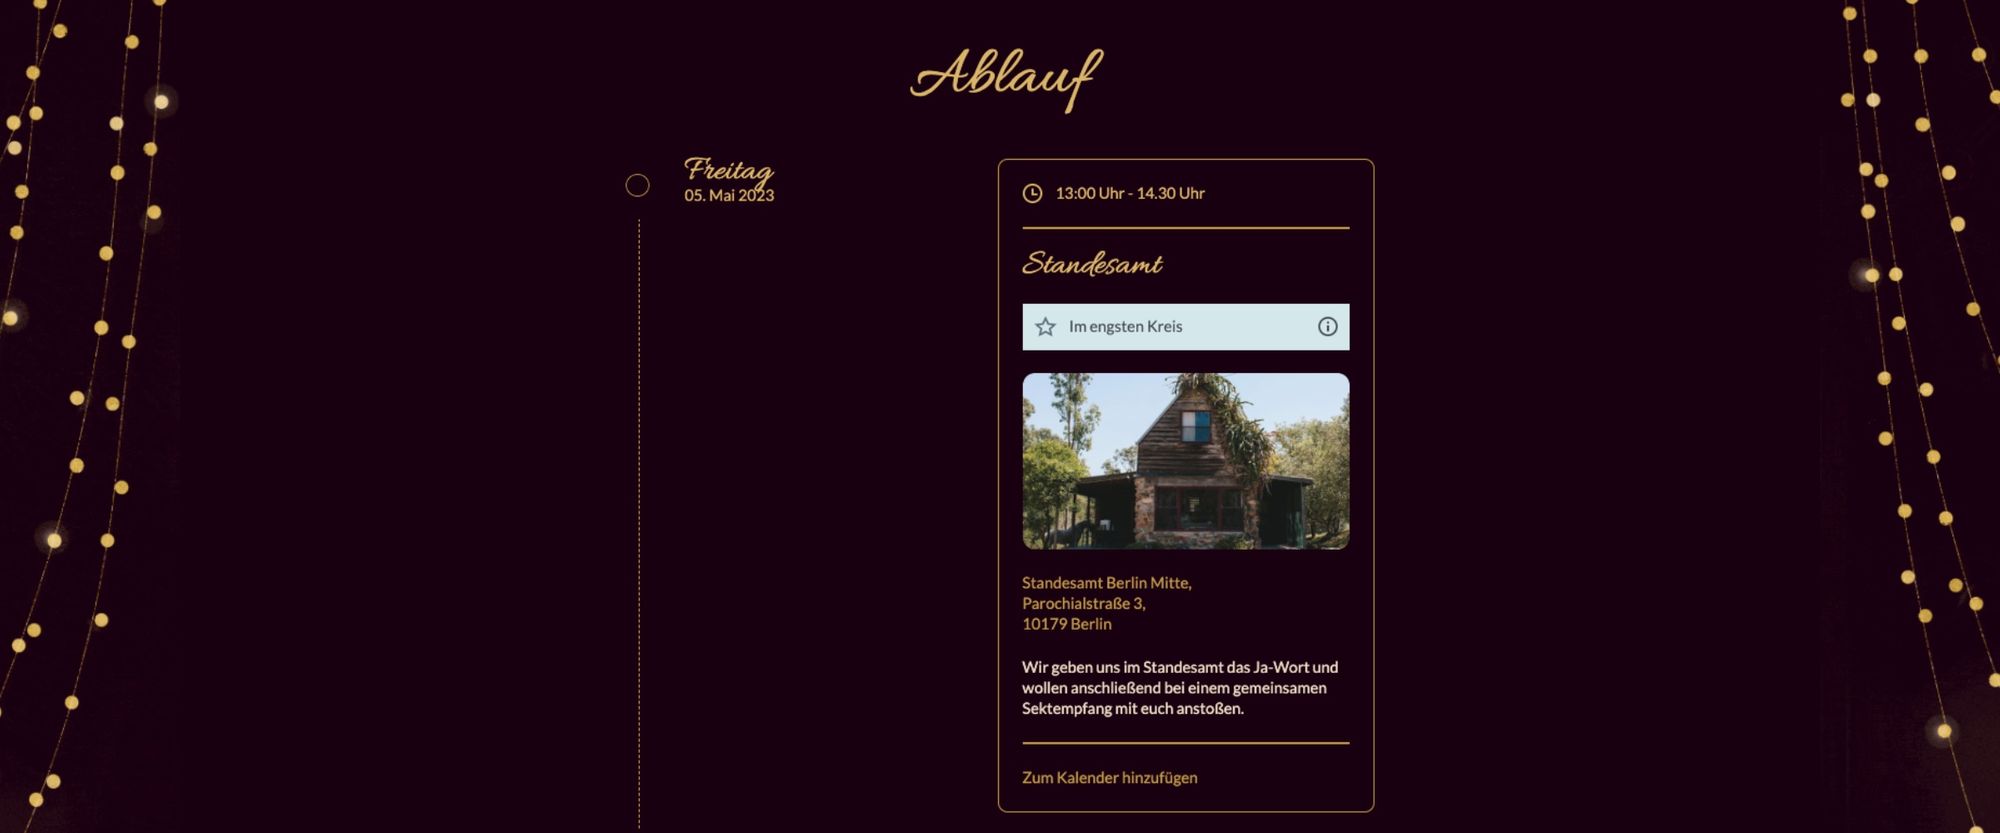 Hochzeitswebseite mit Lichterketten-Elementen